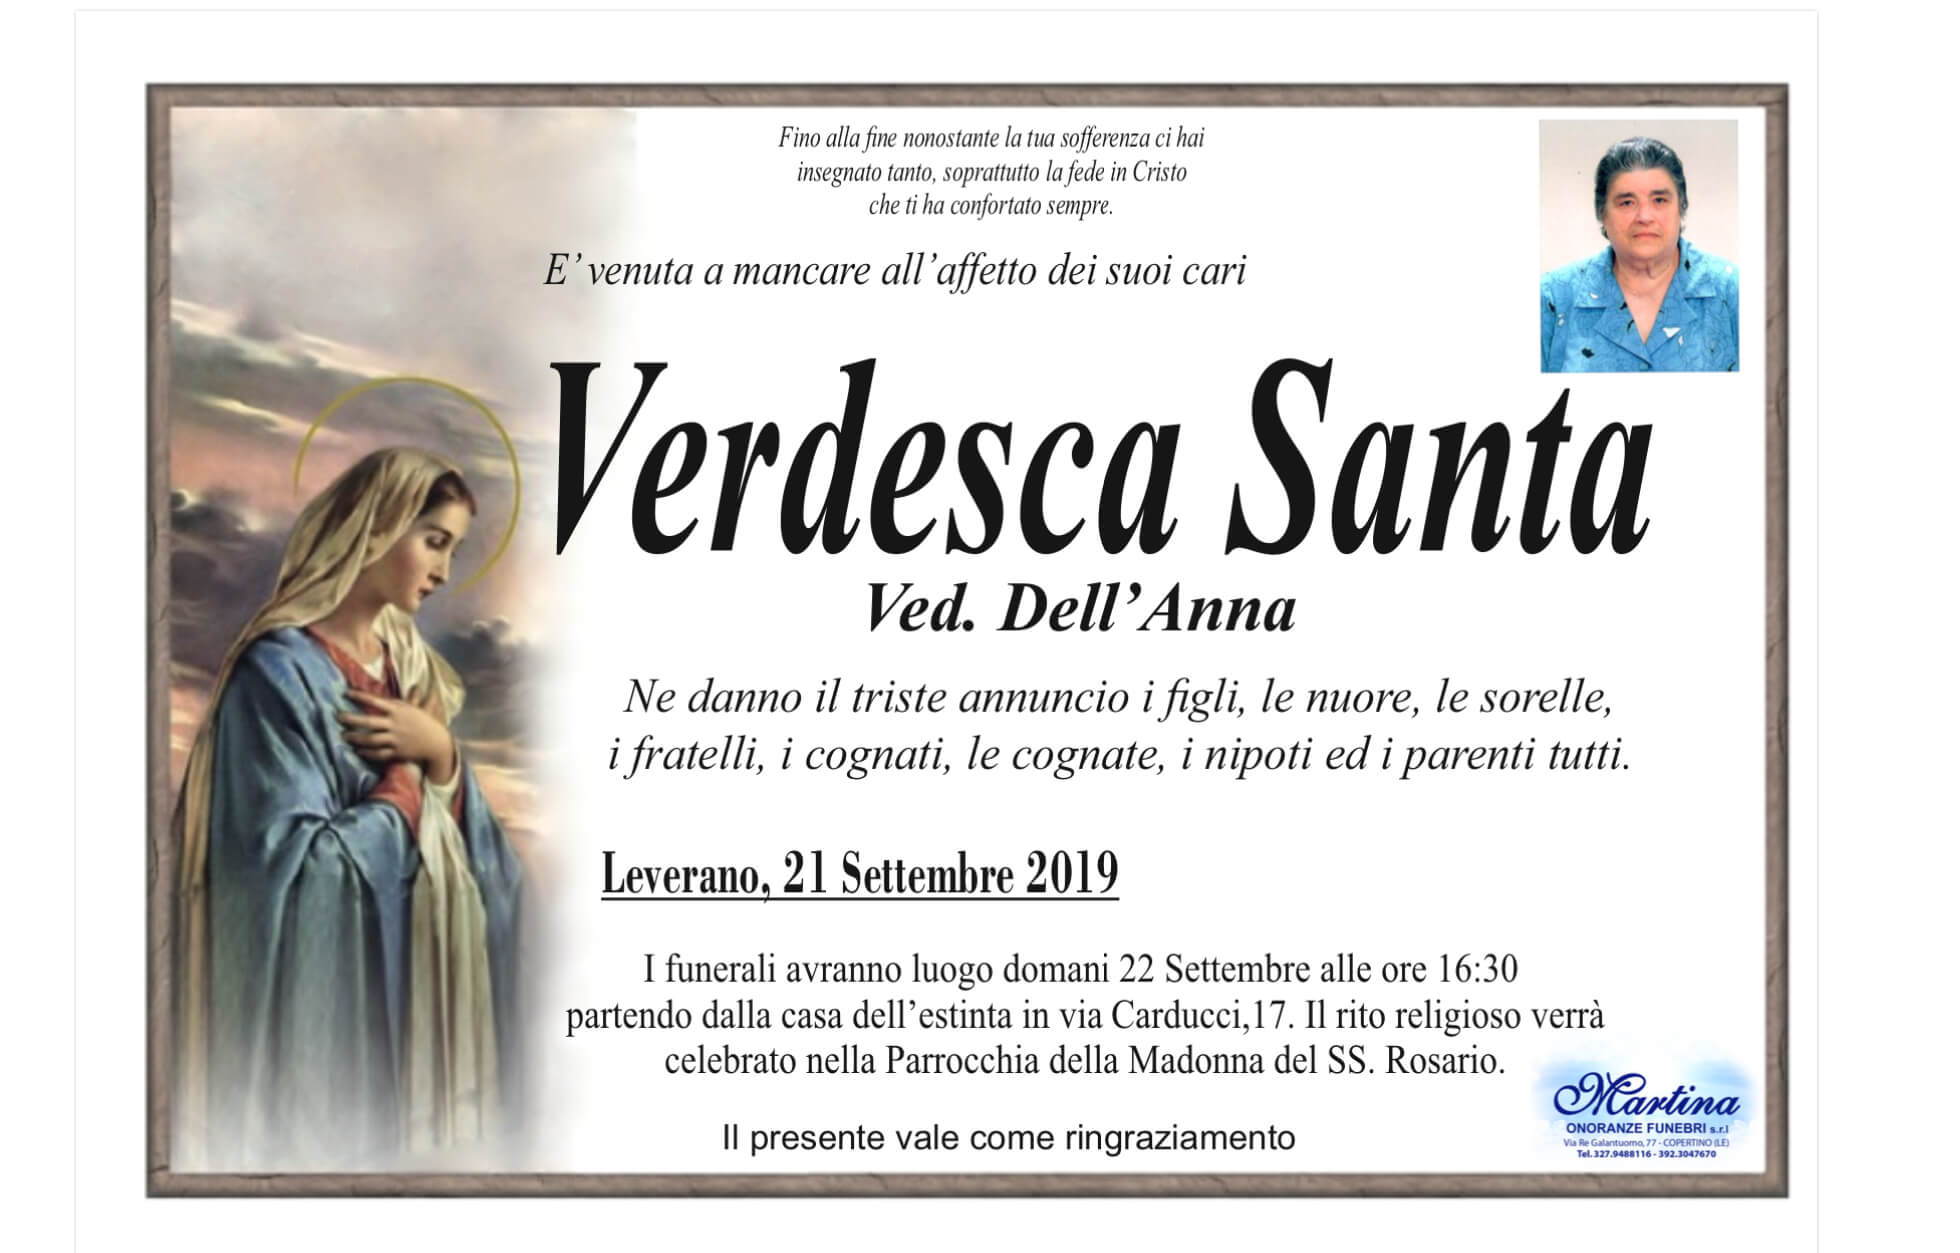 Santa Verdesca